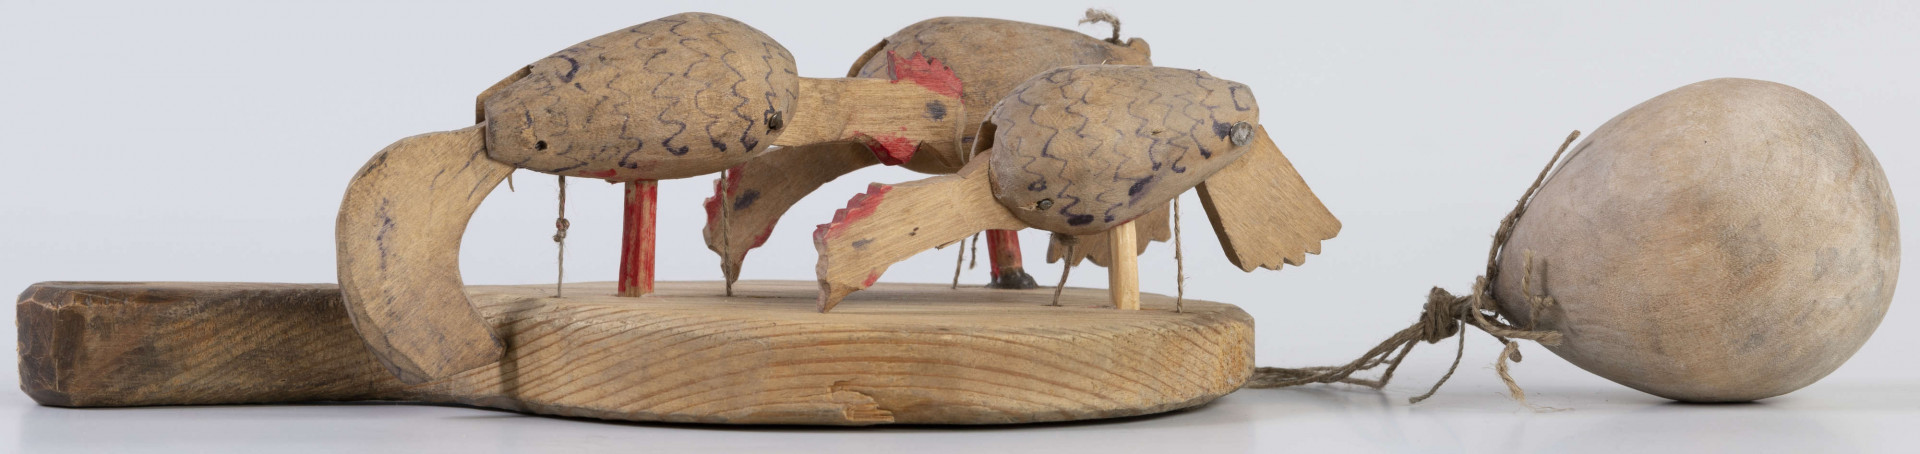 E/17030/ML - Zabawka drewniana przedstawiająca trzy kurki przymocowane do owalnej deseczki z uchwytem. Kurki mają ruchome głowy i ogony, które poruszają się za pomocą sznurków przeciągniętych przez deseczkę i przywiązanych do drewnianej kuli. Deseczka wykonana z drewna sosnowego, kurki z drewna lipowego. Głowy i nogi kurek pomalowane są czerwoną farbą, tułowia zdobi ornament geometryczny w postaci zygzakowatych linii wykonanych brązową farbą.